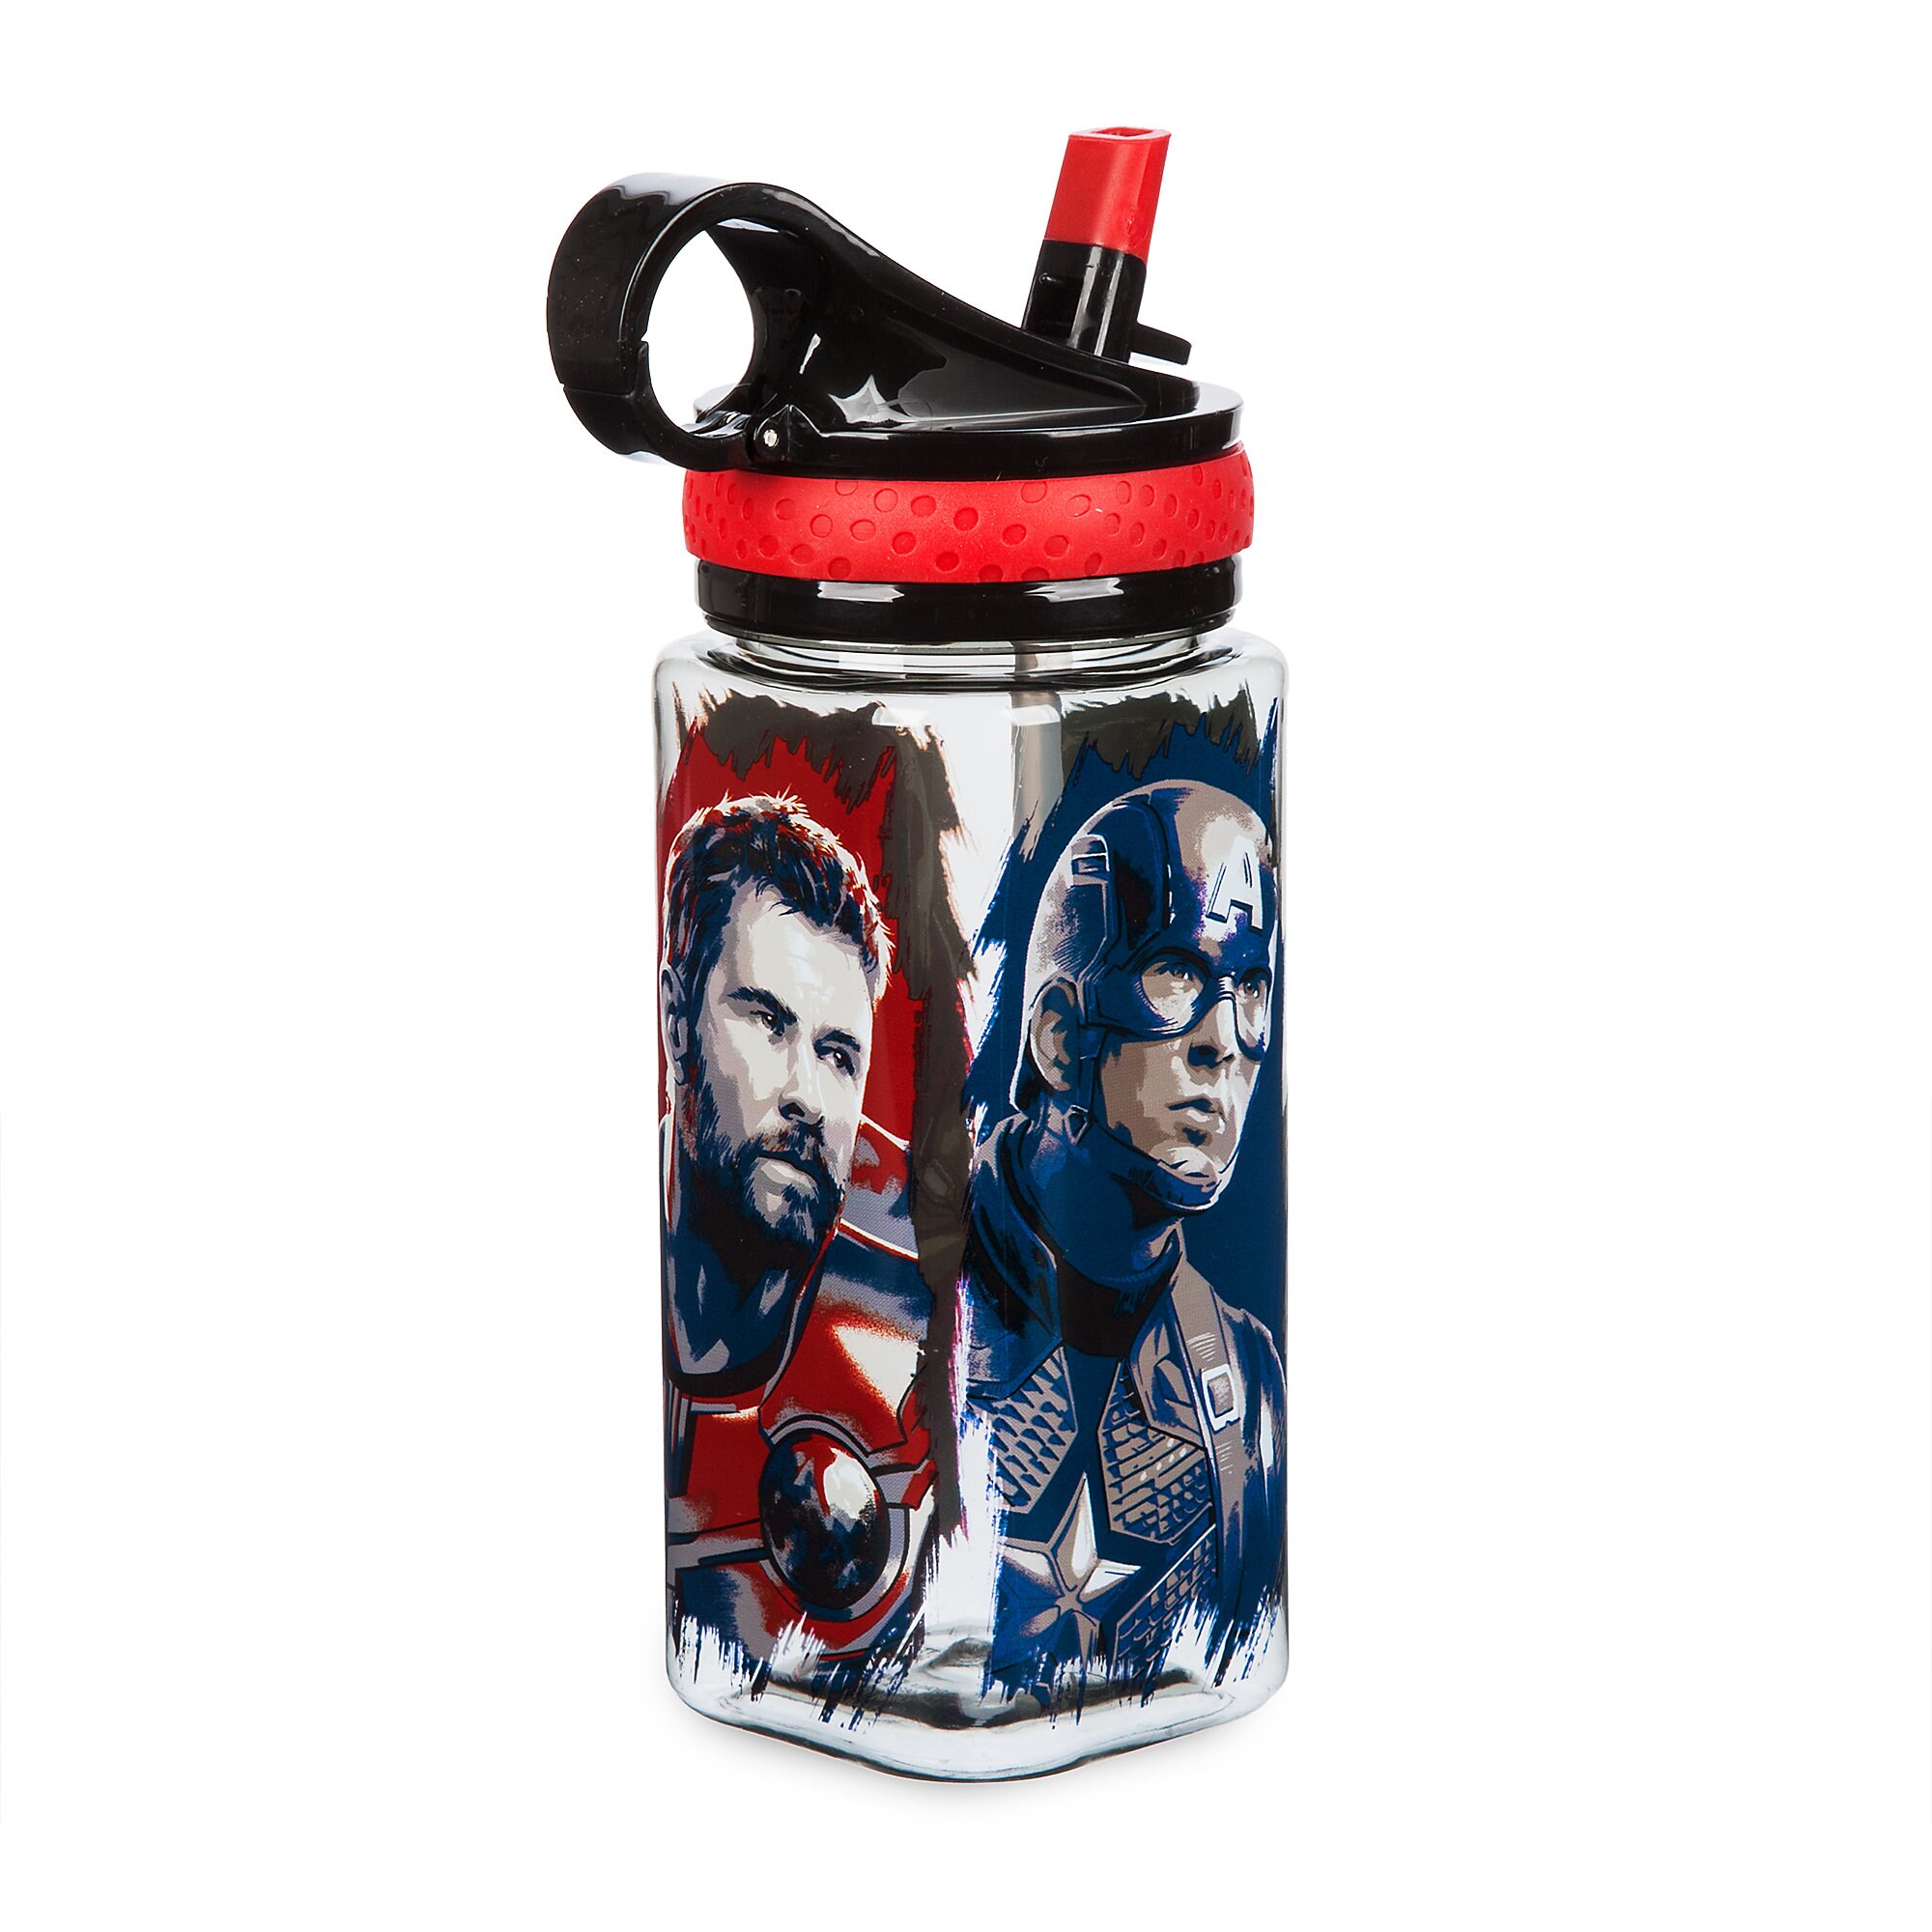 Marvel's Avengers: Endgame Water Bottle with Built-In Straw